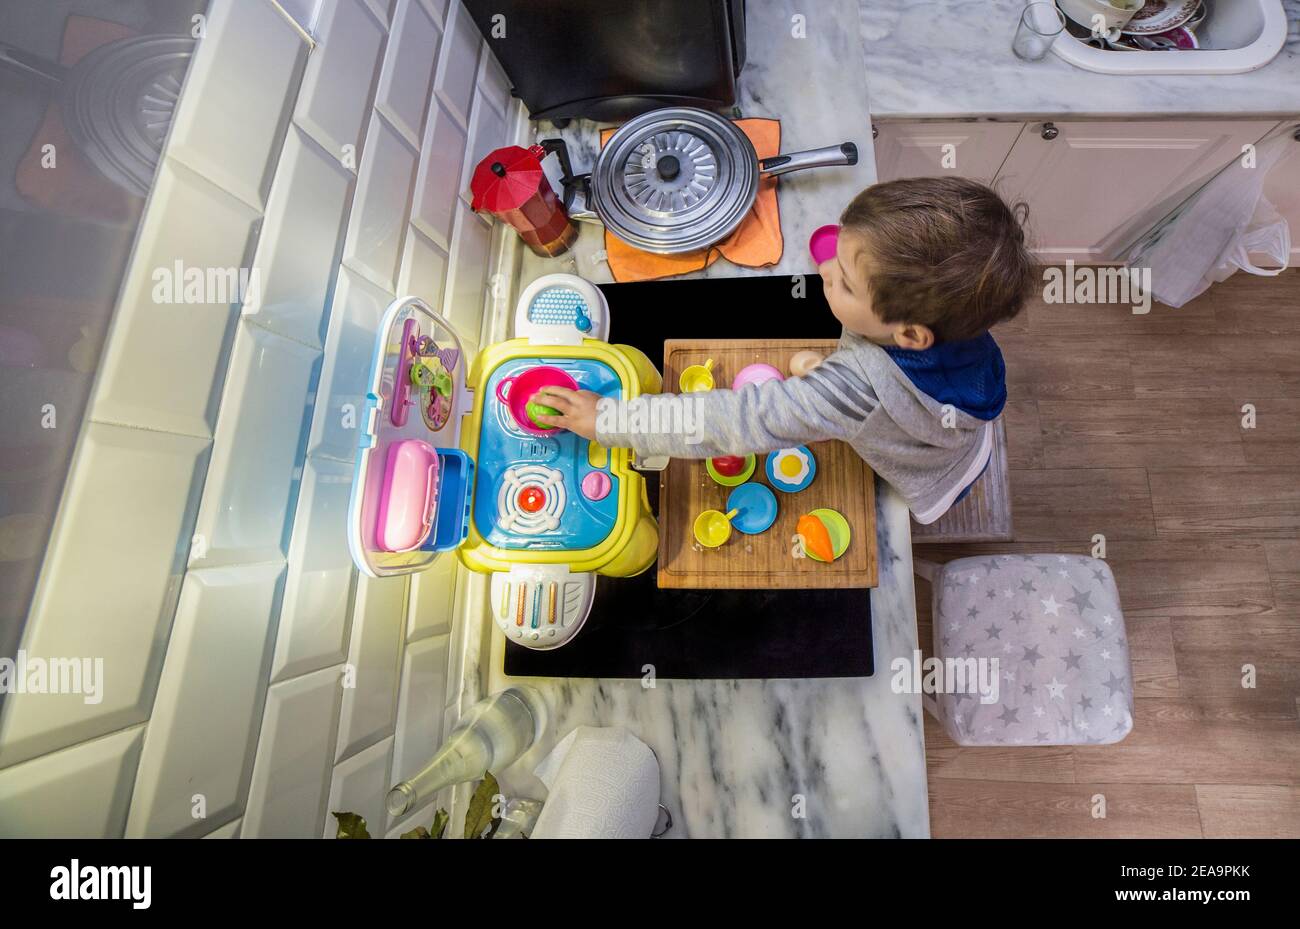 Enfant garçon jouant avec la cuisine jouet sur le vrai comptoir de cuisine.  Prise de vue grand angle en hauteur. Les mouvements sont légèrement flous  Photo Stock - Alamy